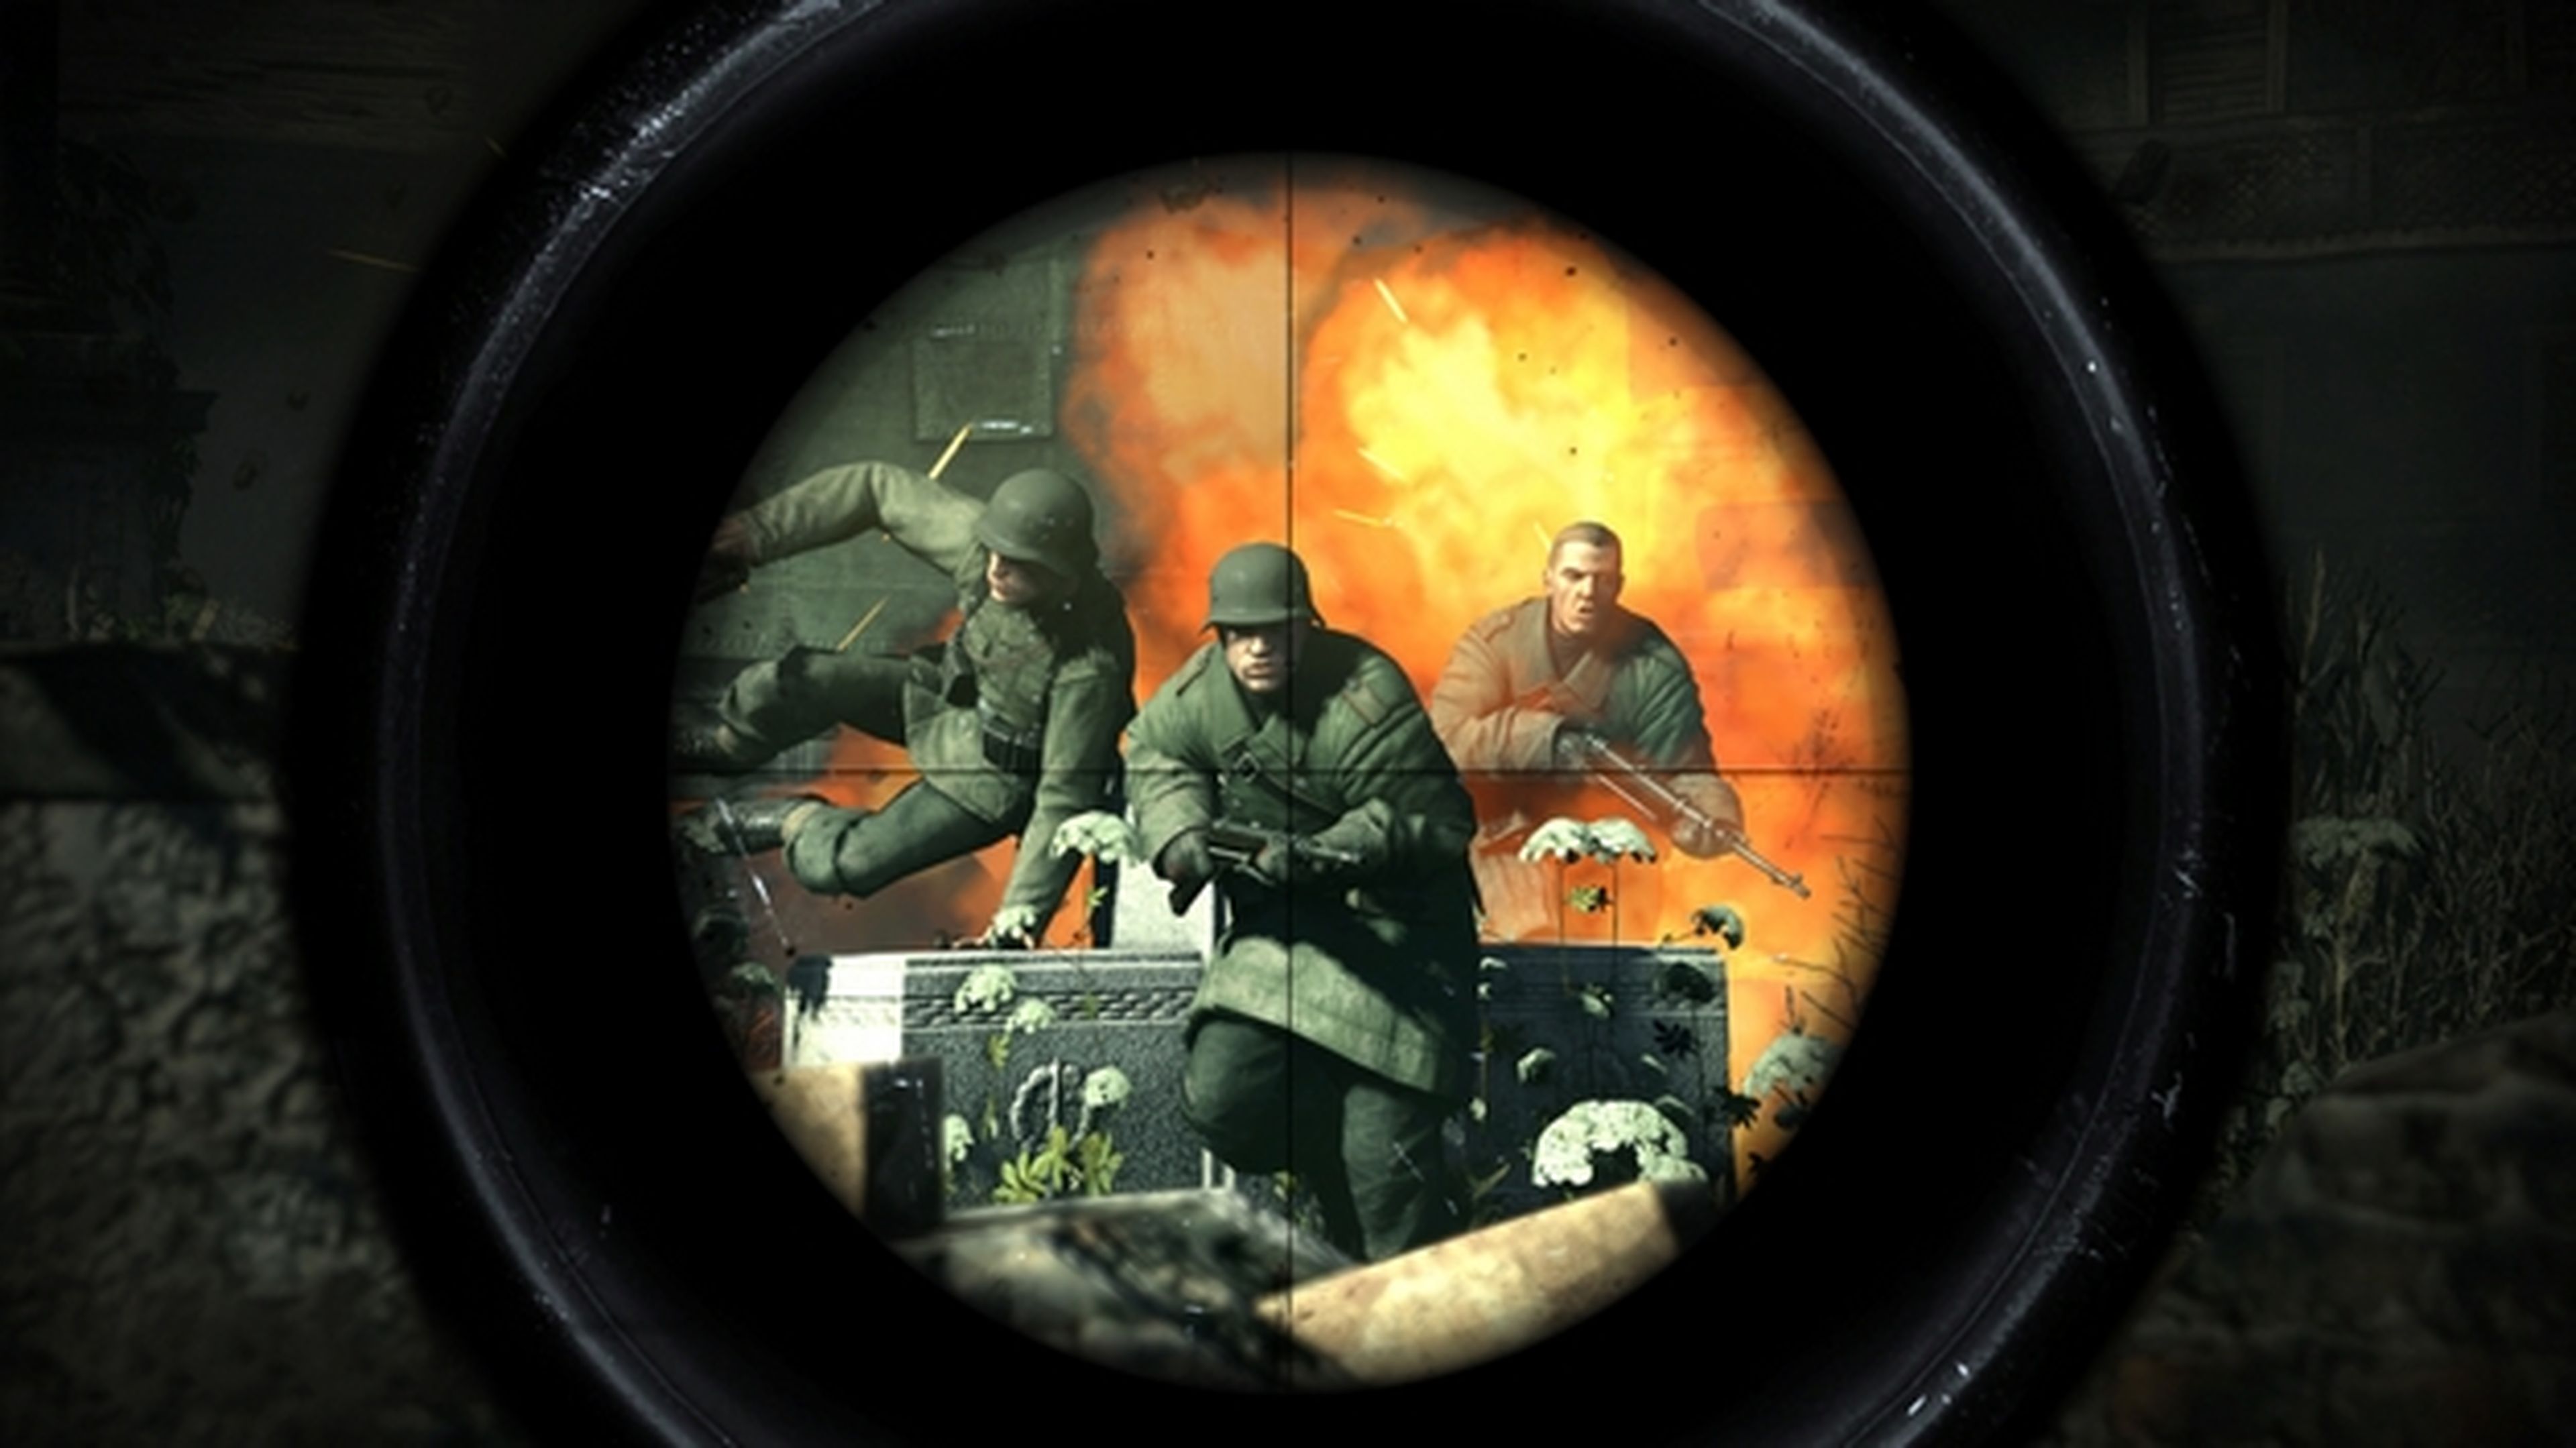 Descarga Sniper Elite V2 gratis para PC en Steam